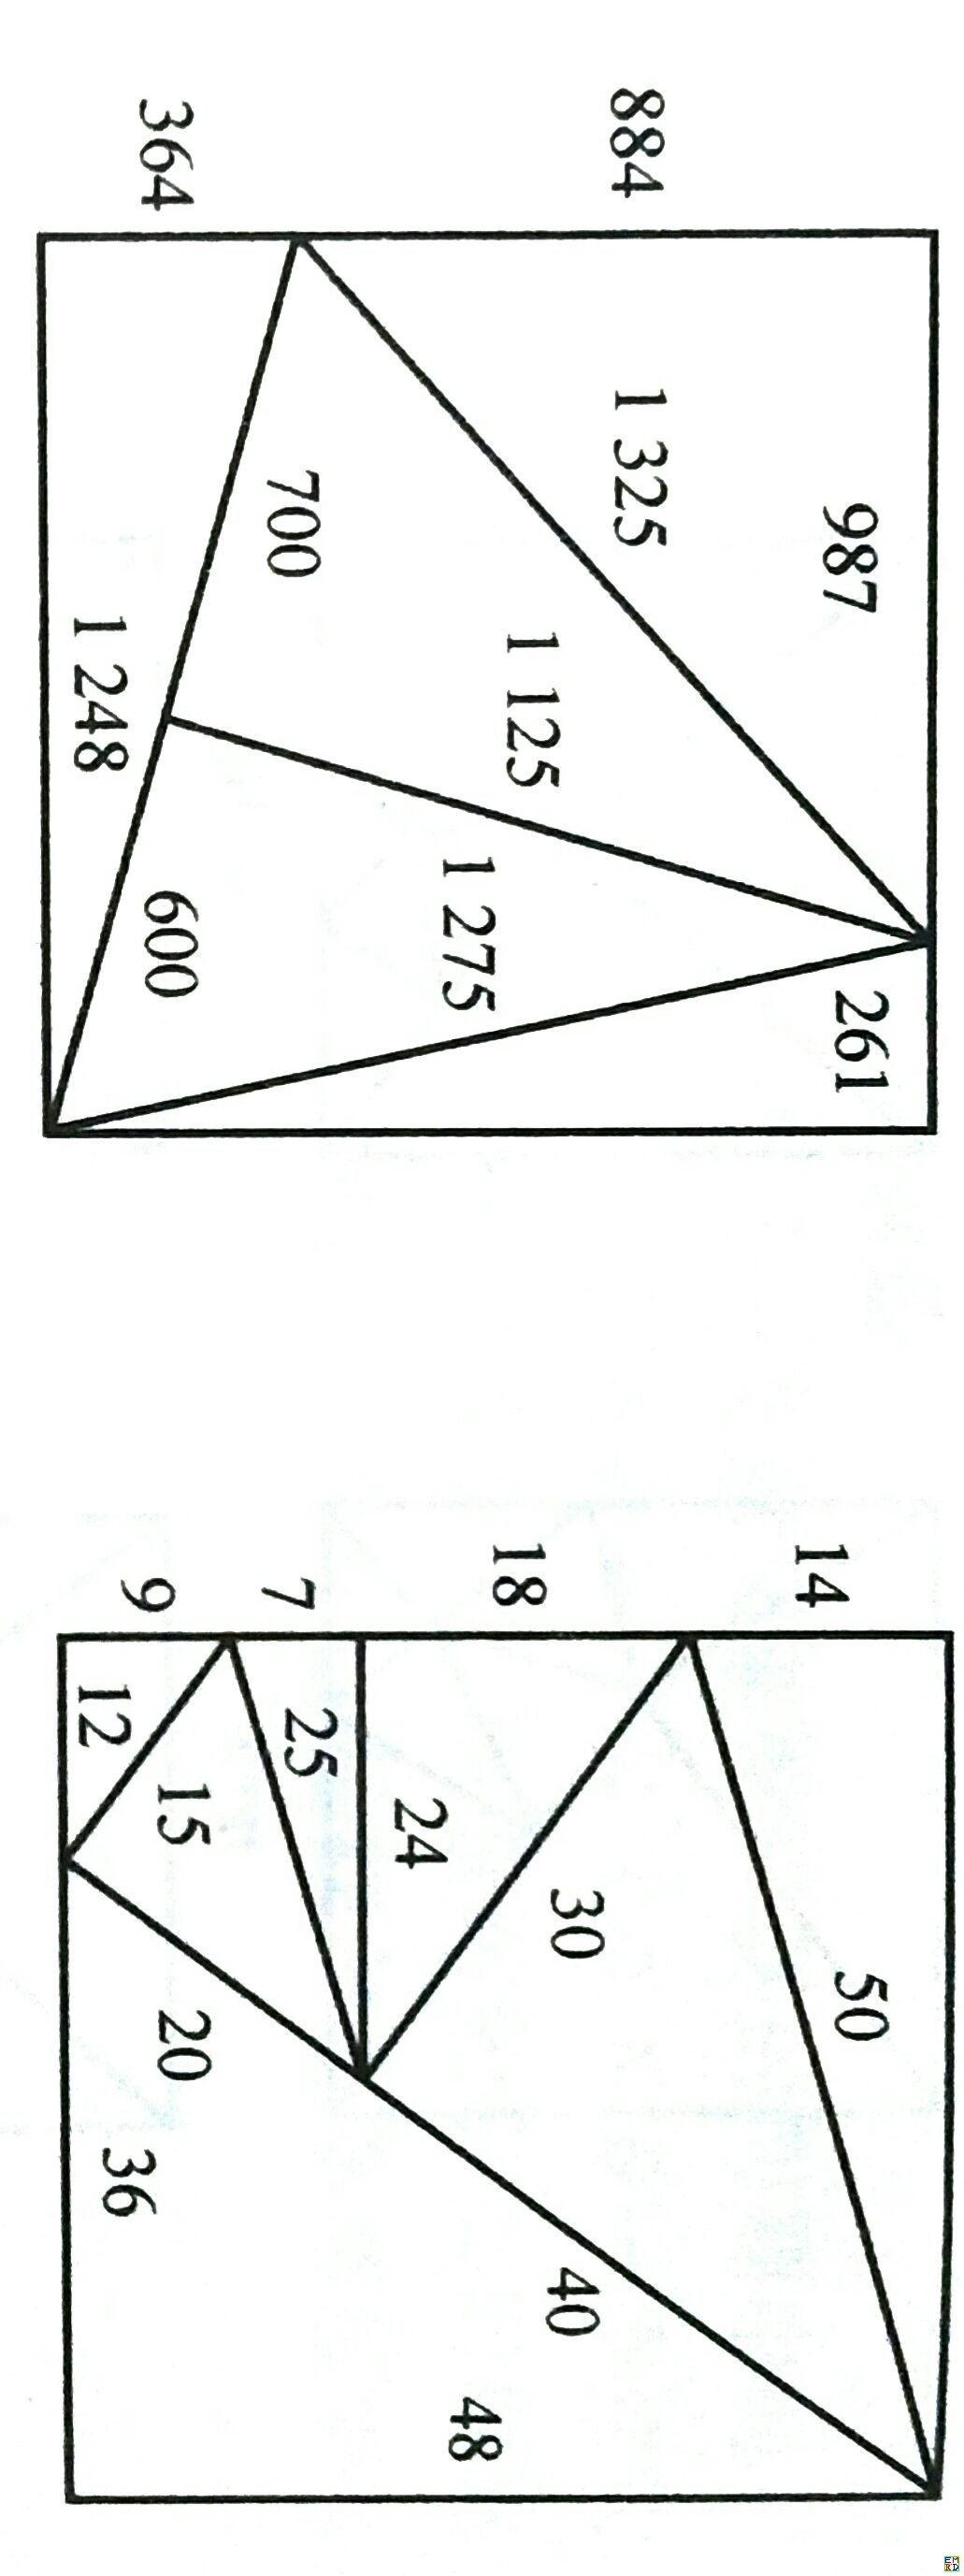 兩種整邊切三角形方法